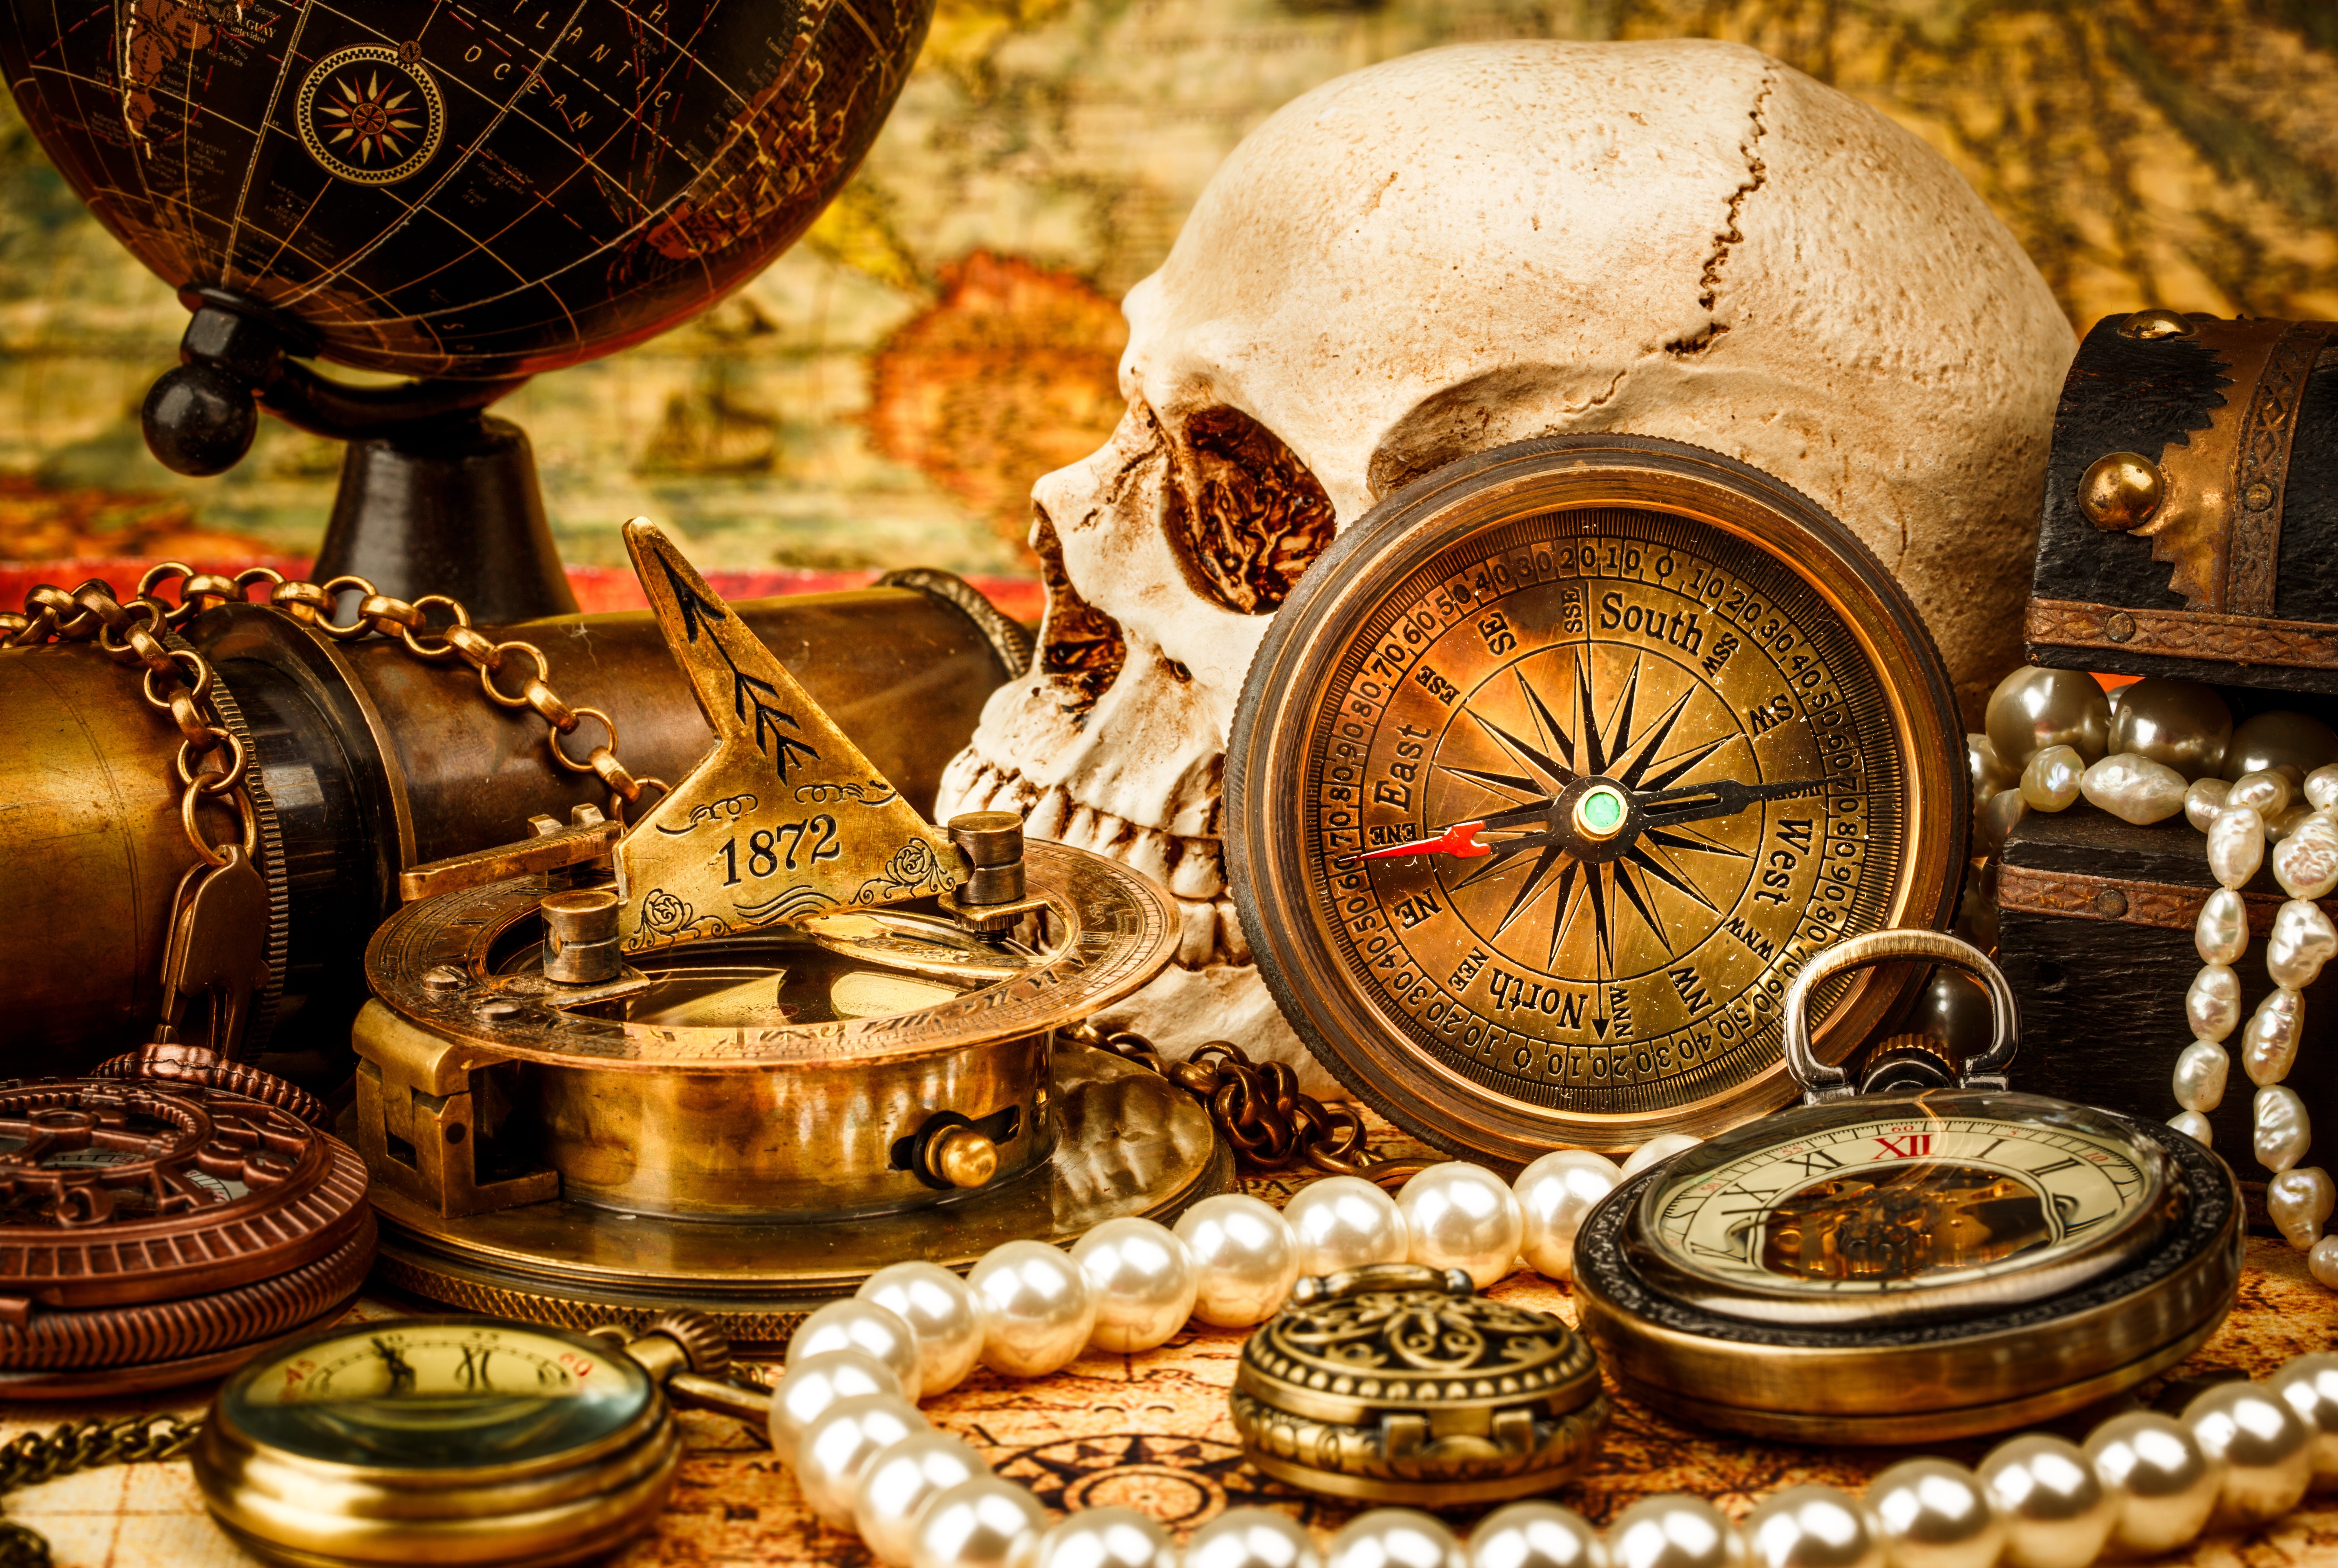 Сокровища музыкальной карты. Старинные часы. Старинный компас. Пиратские сокровища. Натюрморт с часами.